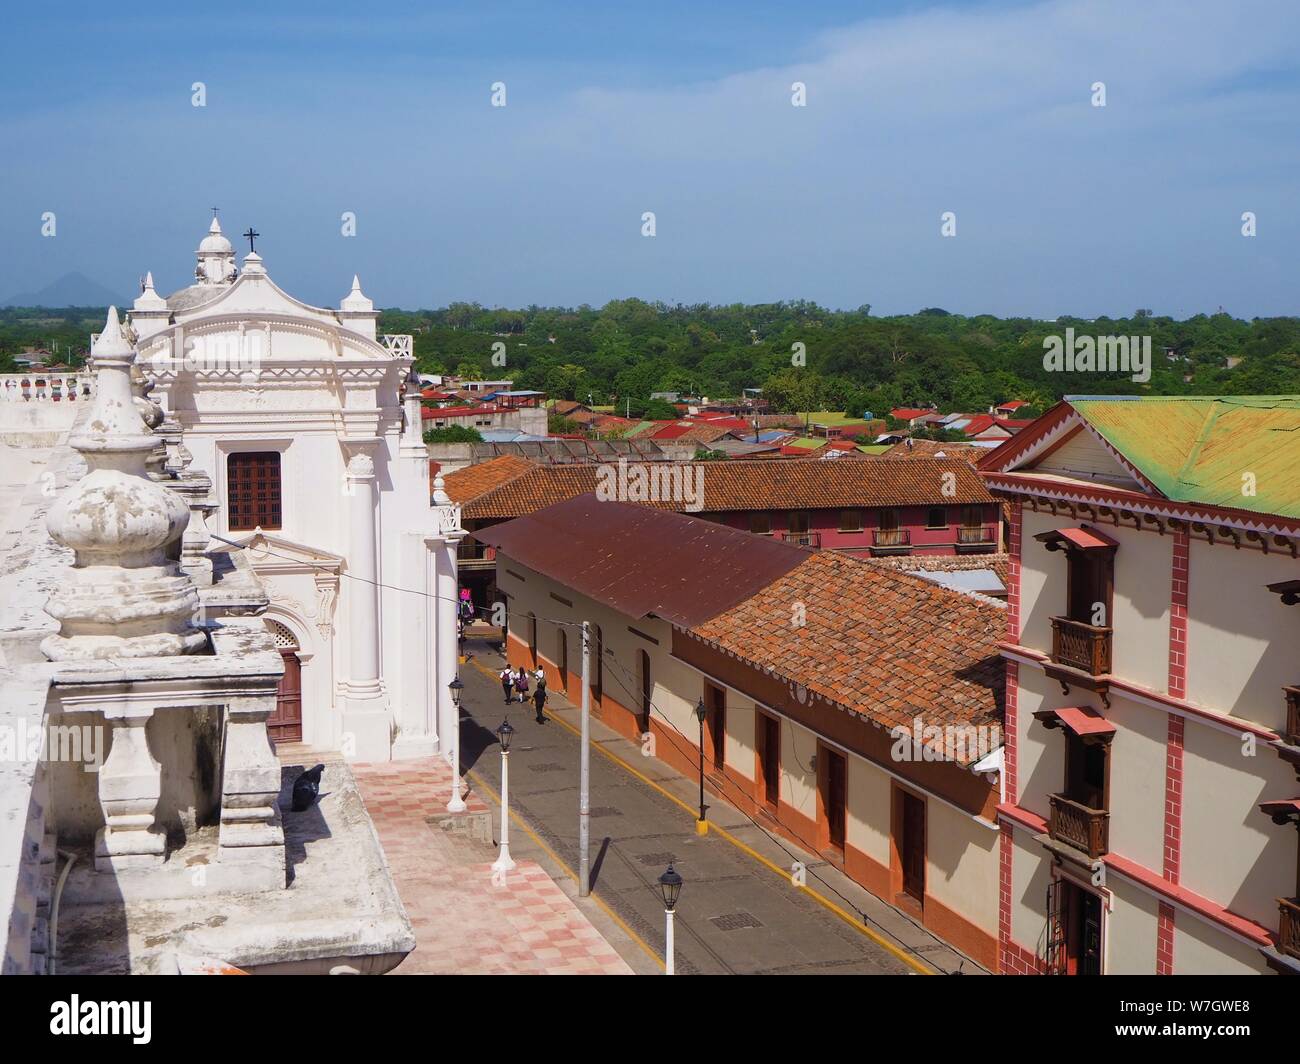 Leon, Città, Nicaragua america centrale, dal tetto del Duomo vero e proprio e la rinomata Basilica Cattedrale dell Assunzione della Beata Vergine Maria Foto Stock